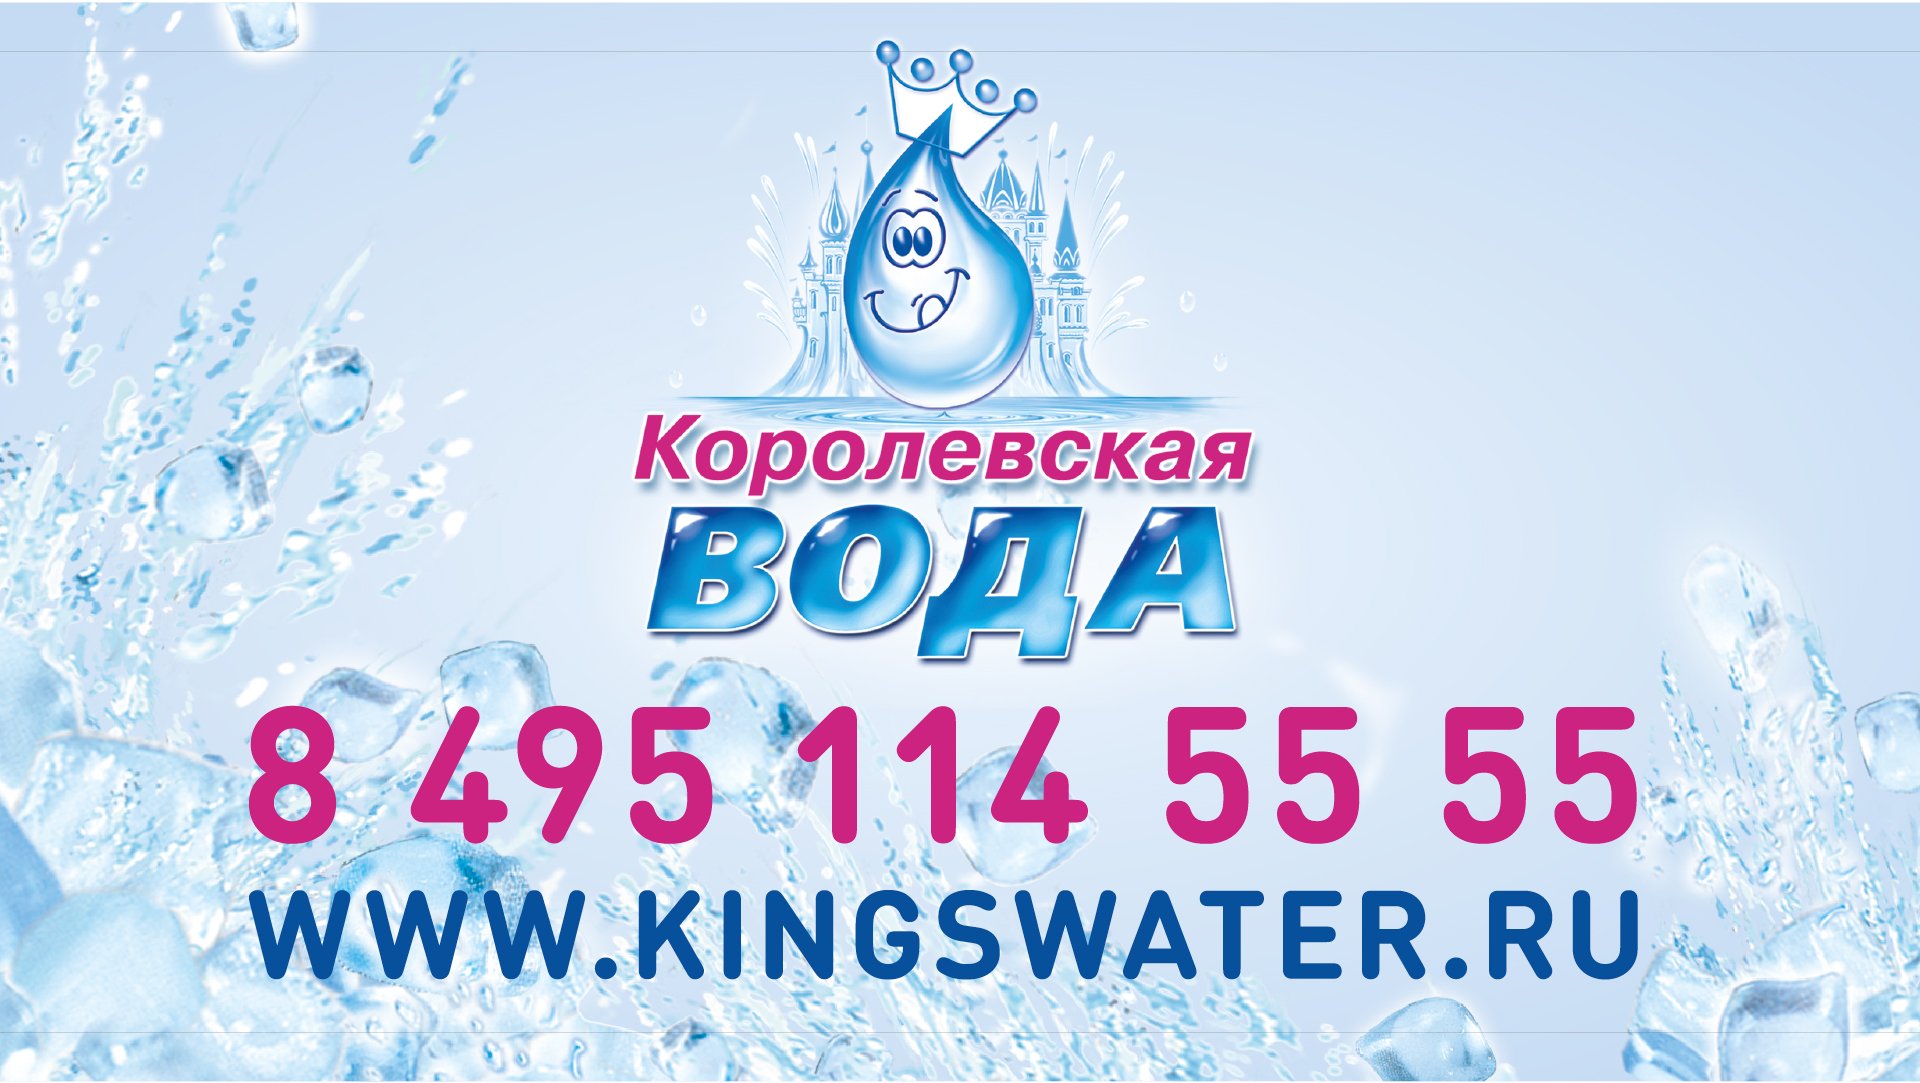 Королевская вода. ООО Королевская вода. Королевская вода логотип. Королевская вода сотрудники.